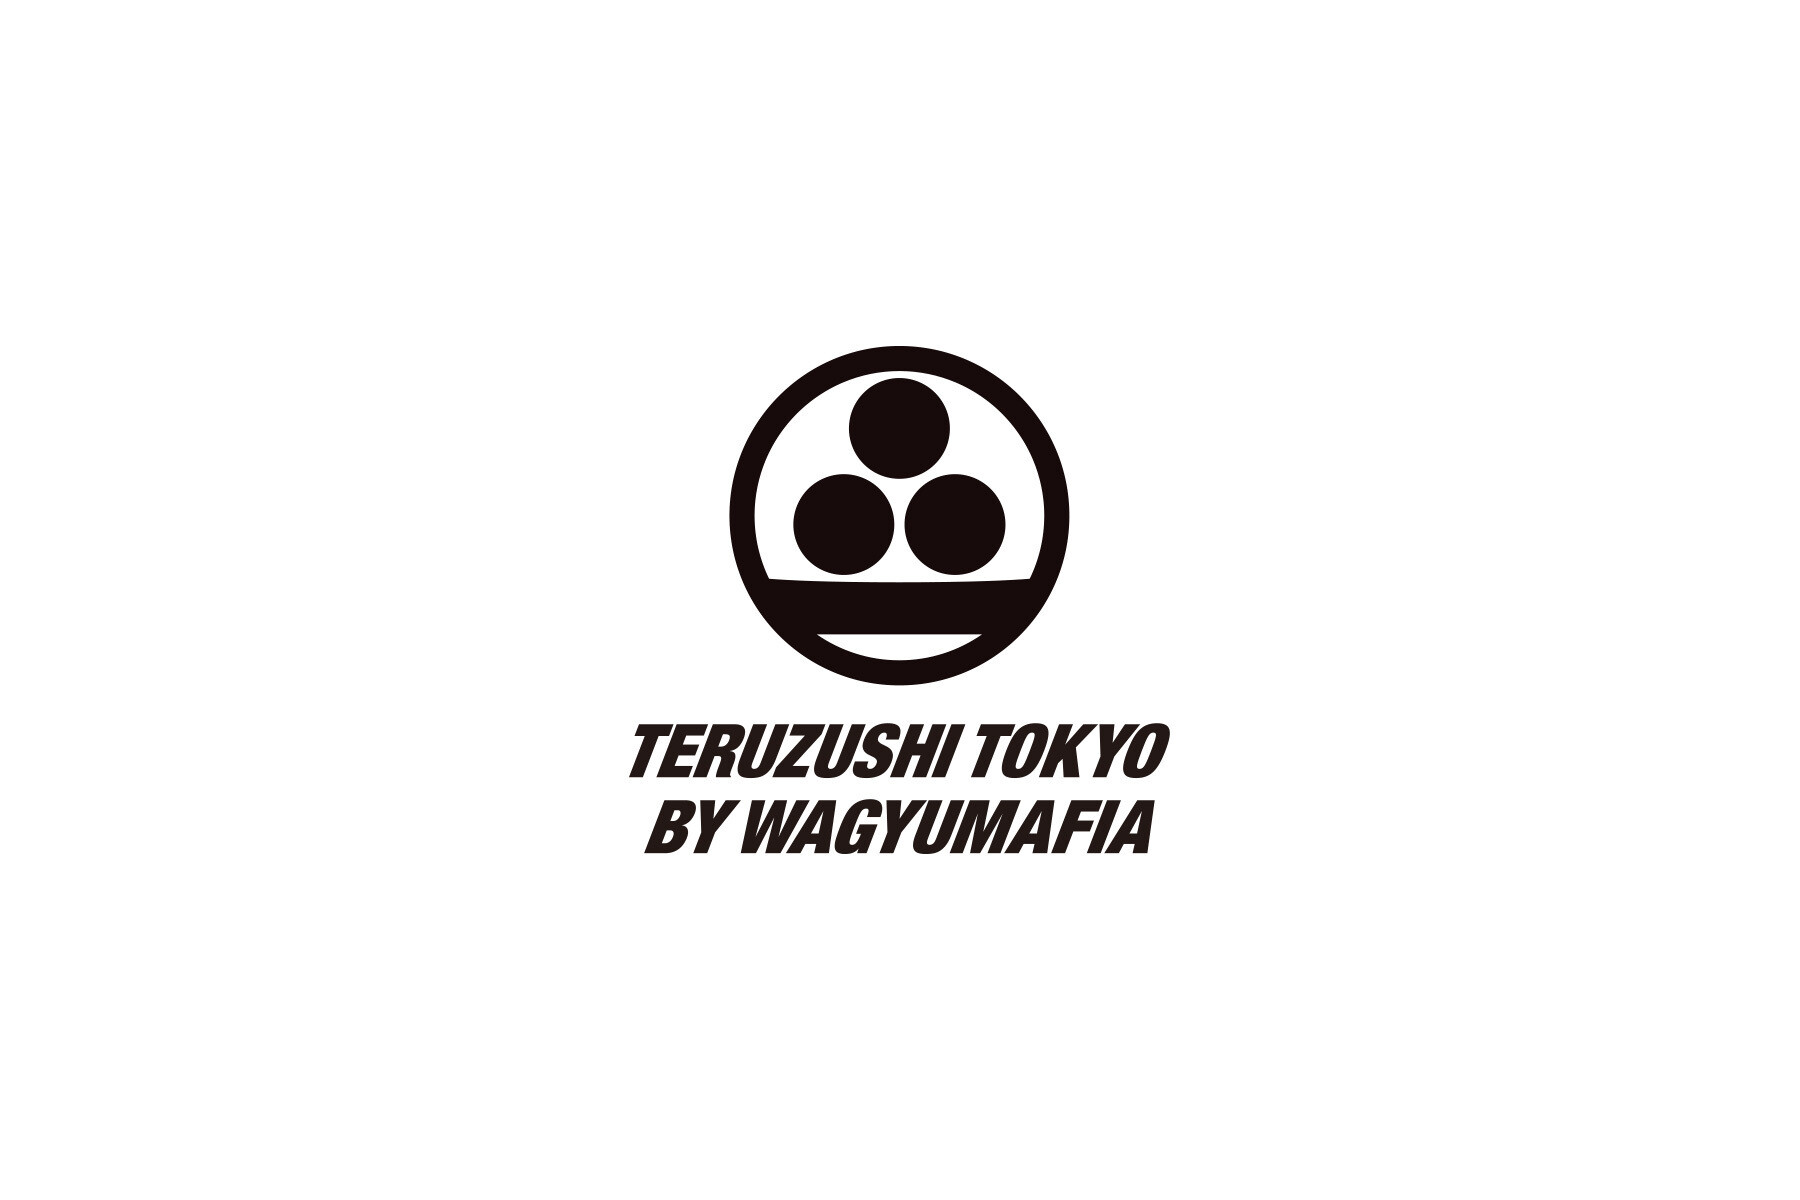 TERUZUSHI TOKYO BY WAGYUMAFIA's image